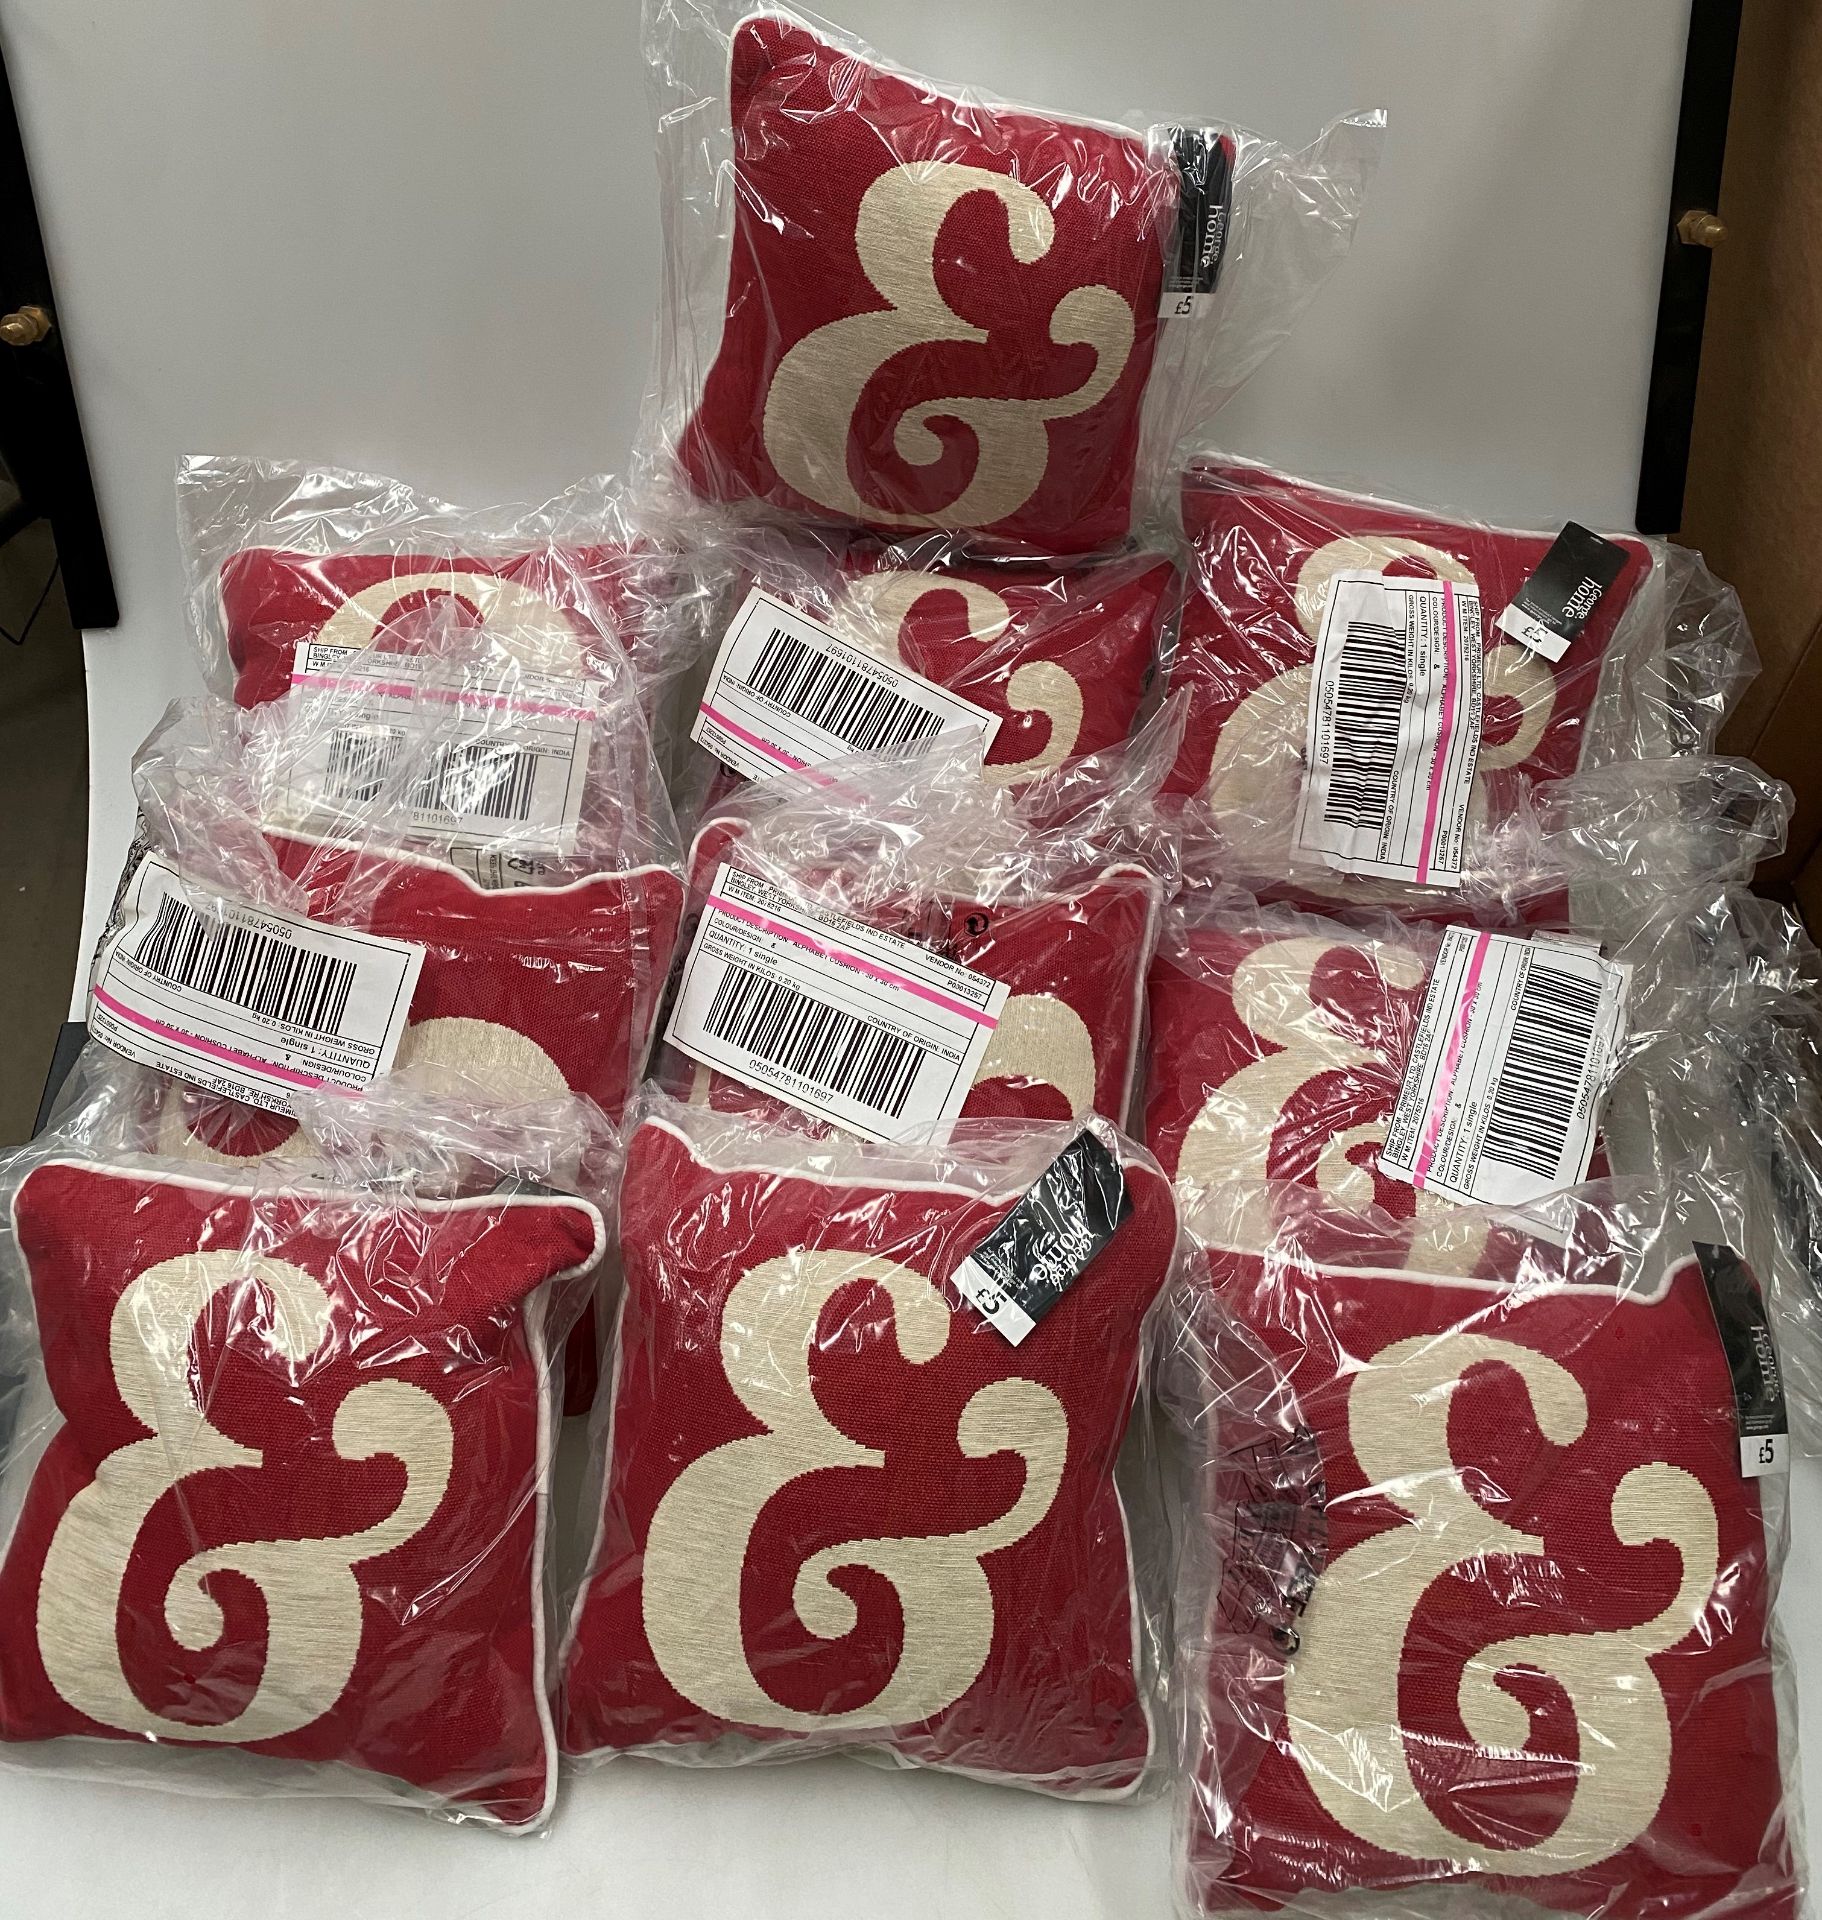 12 x George Home '&' red alphabet mini cushions - 30cm x 30cm RRP œ5 each